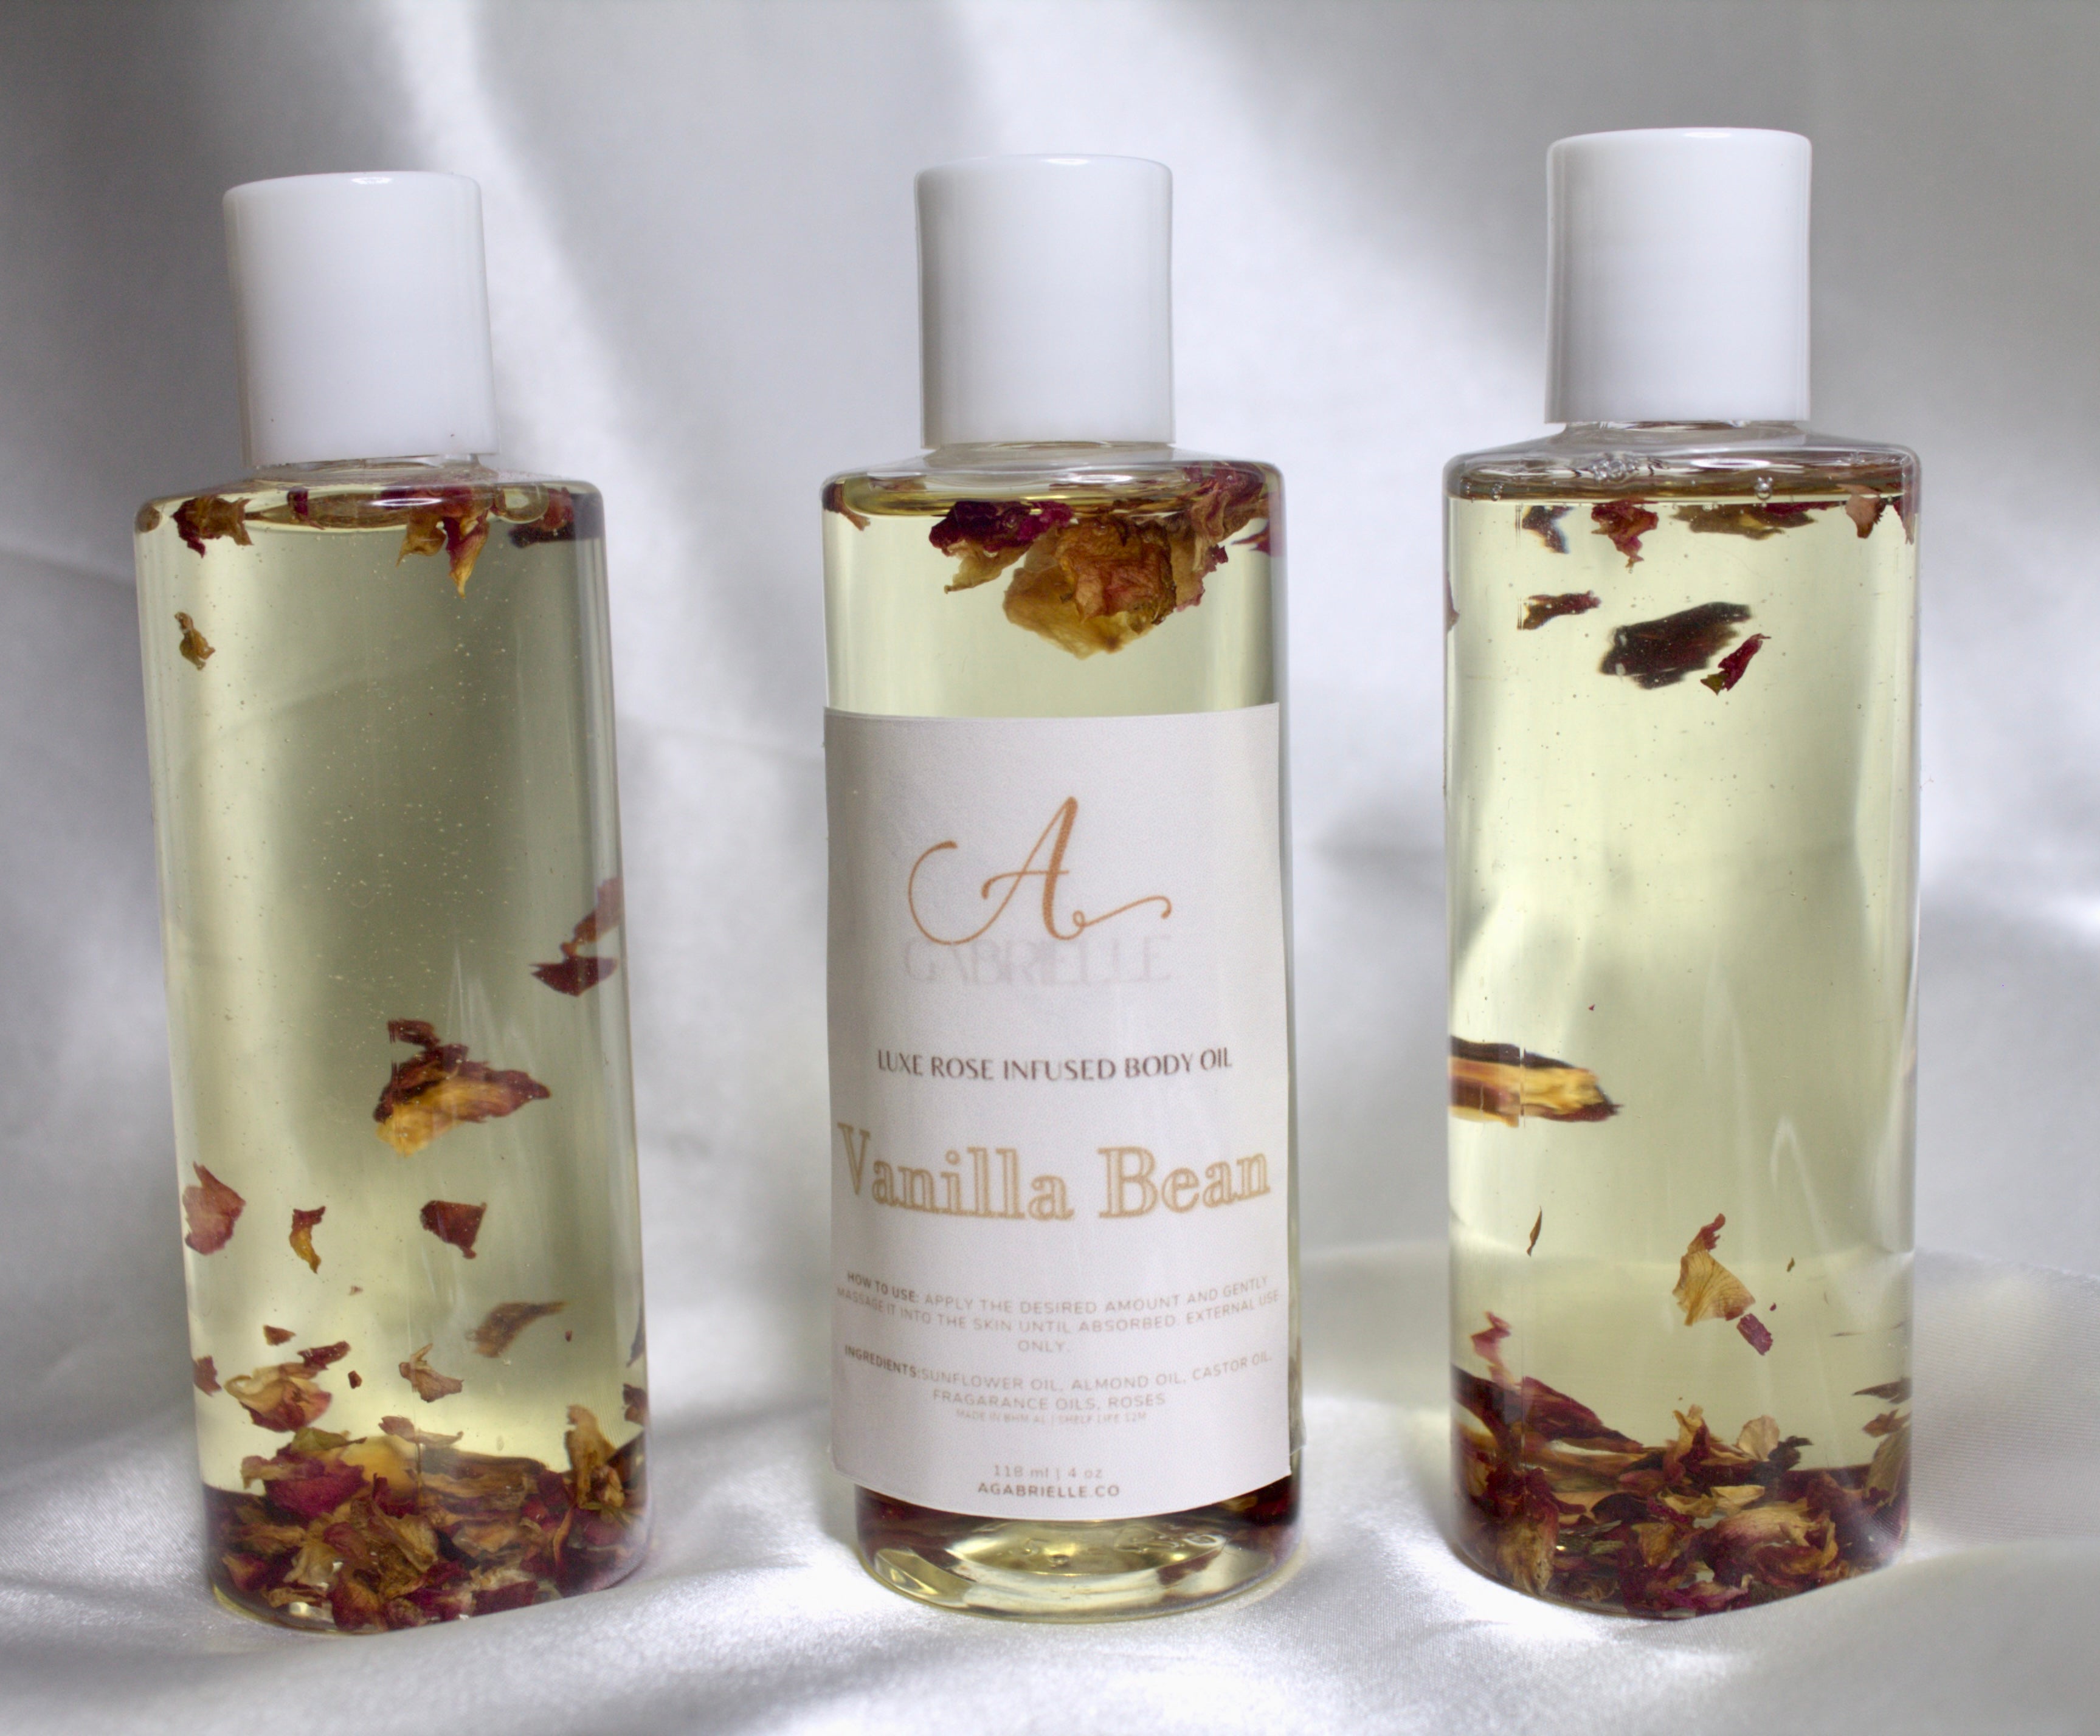 Vanilla Rose Massage & Body Oil